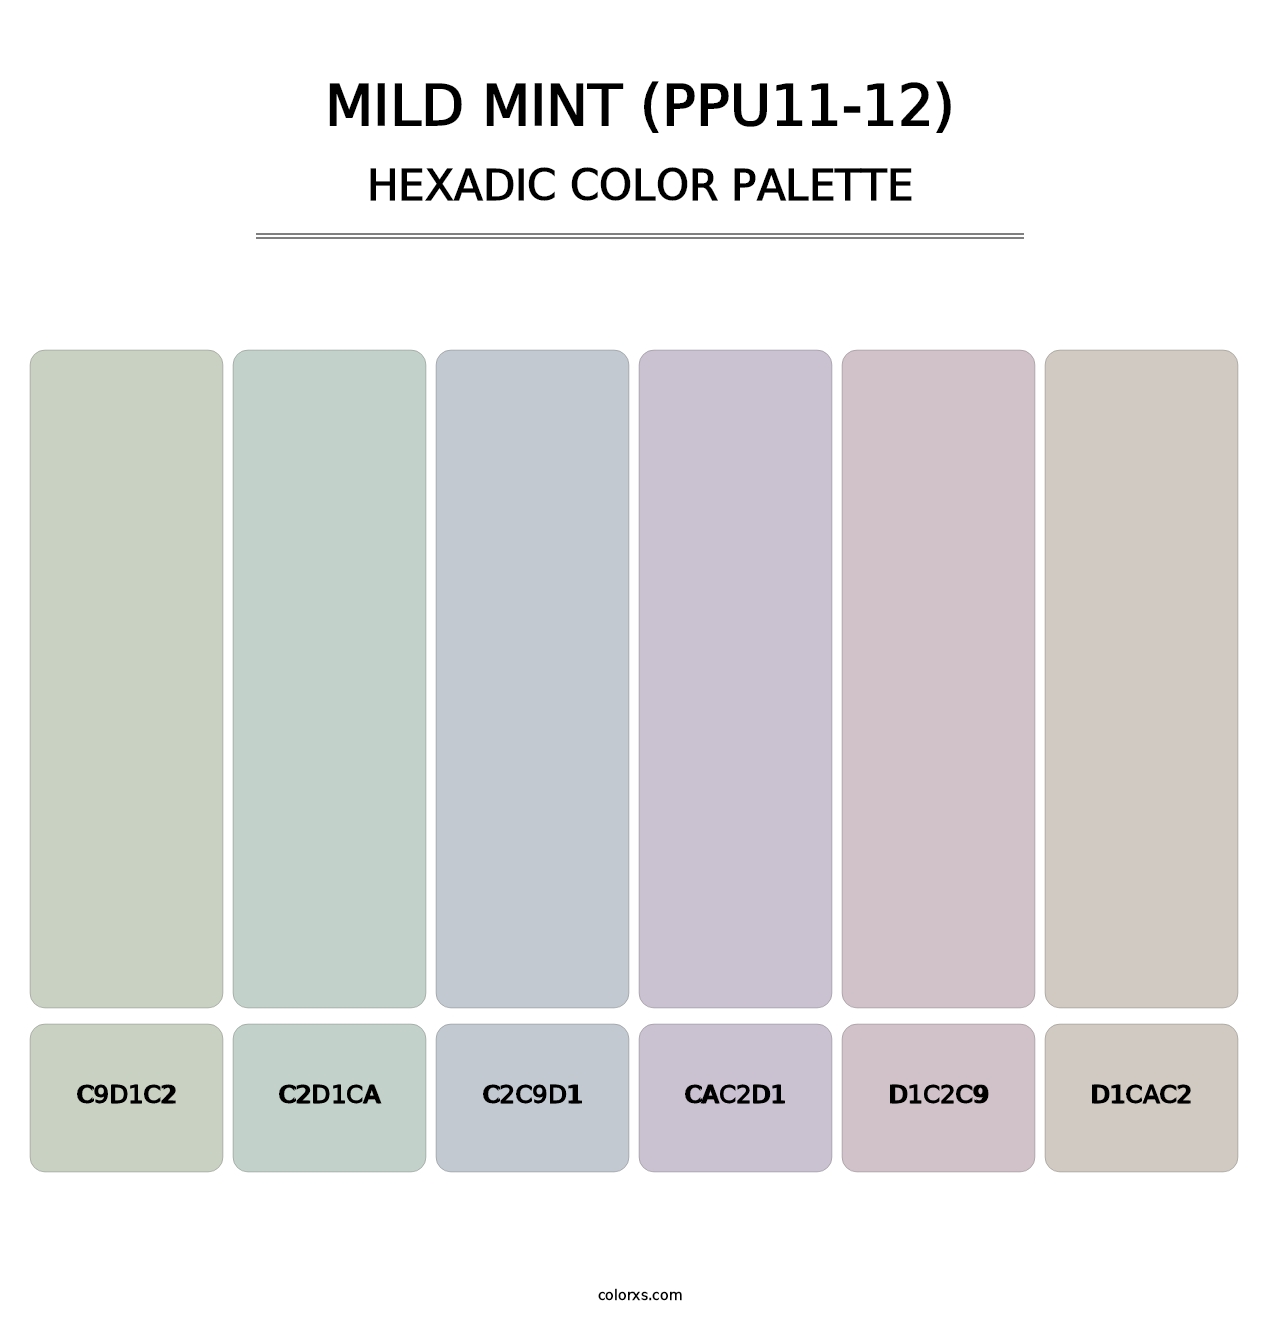 Mild Mint (PPU11-12) - Hexadic Color Palette